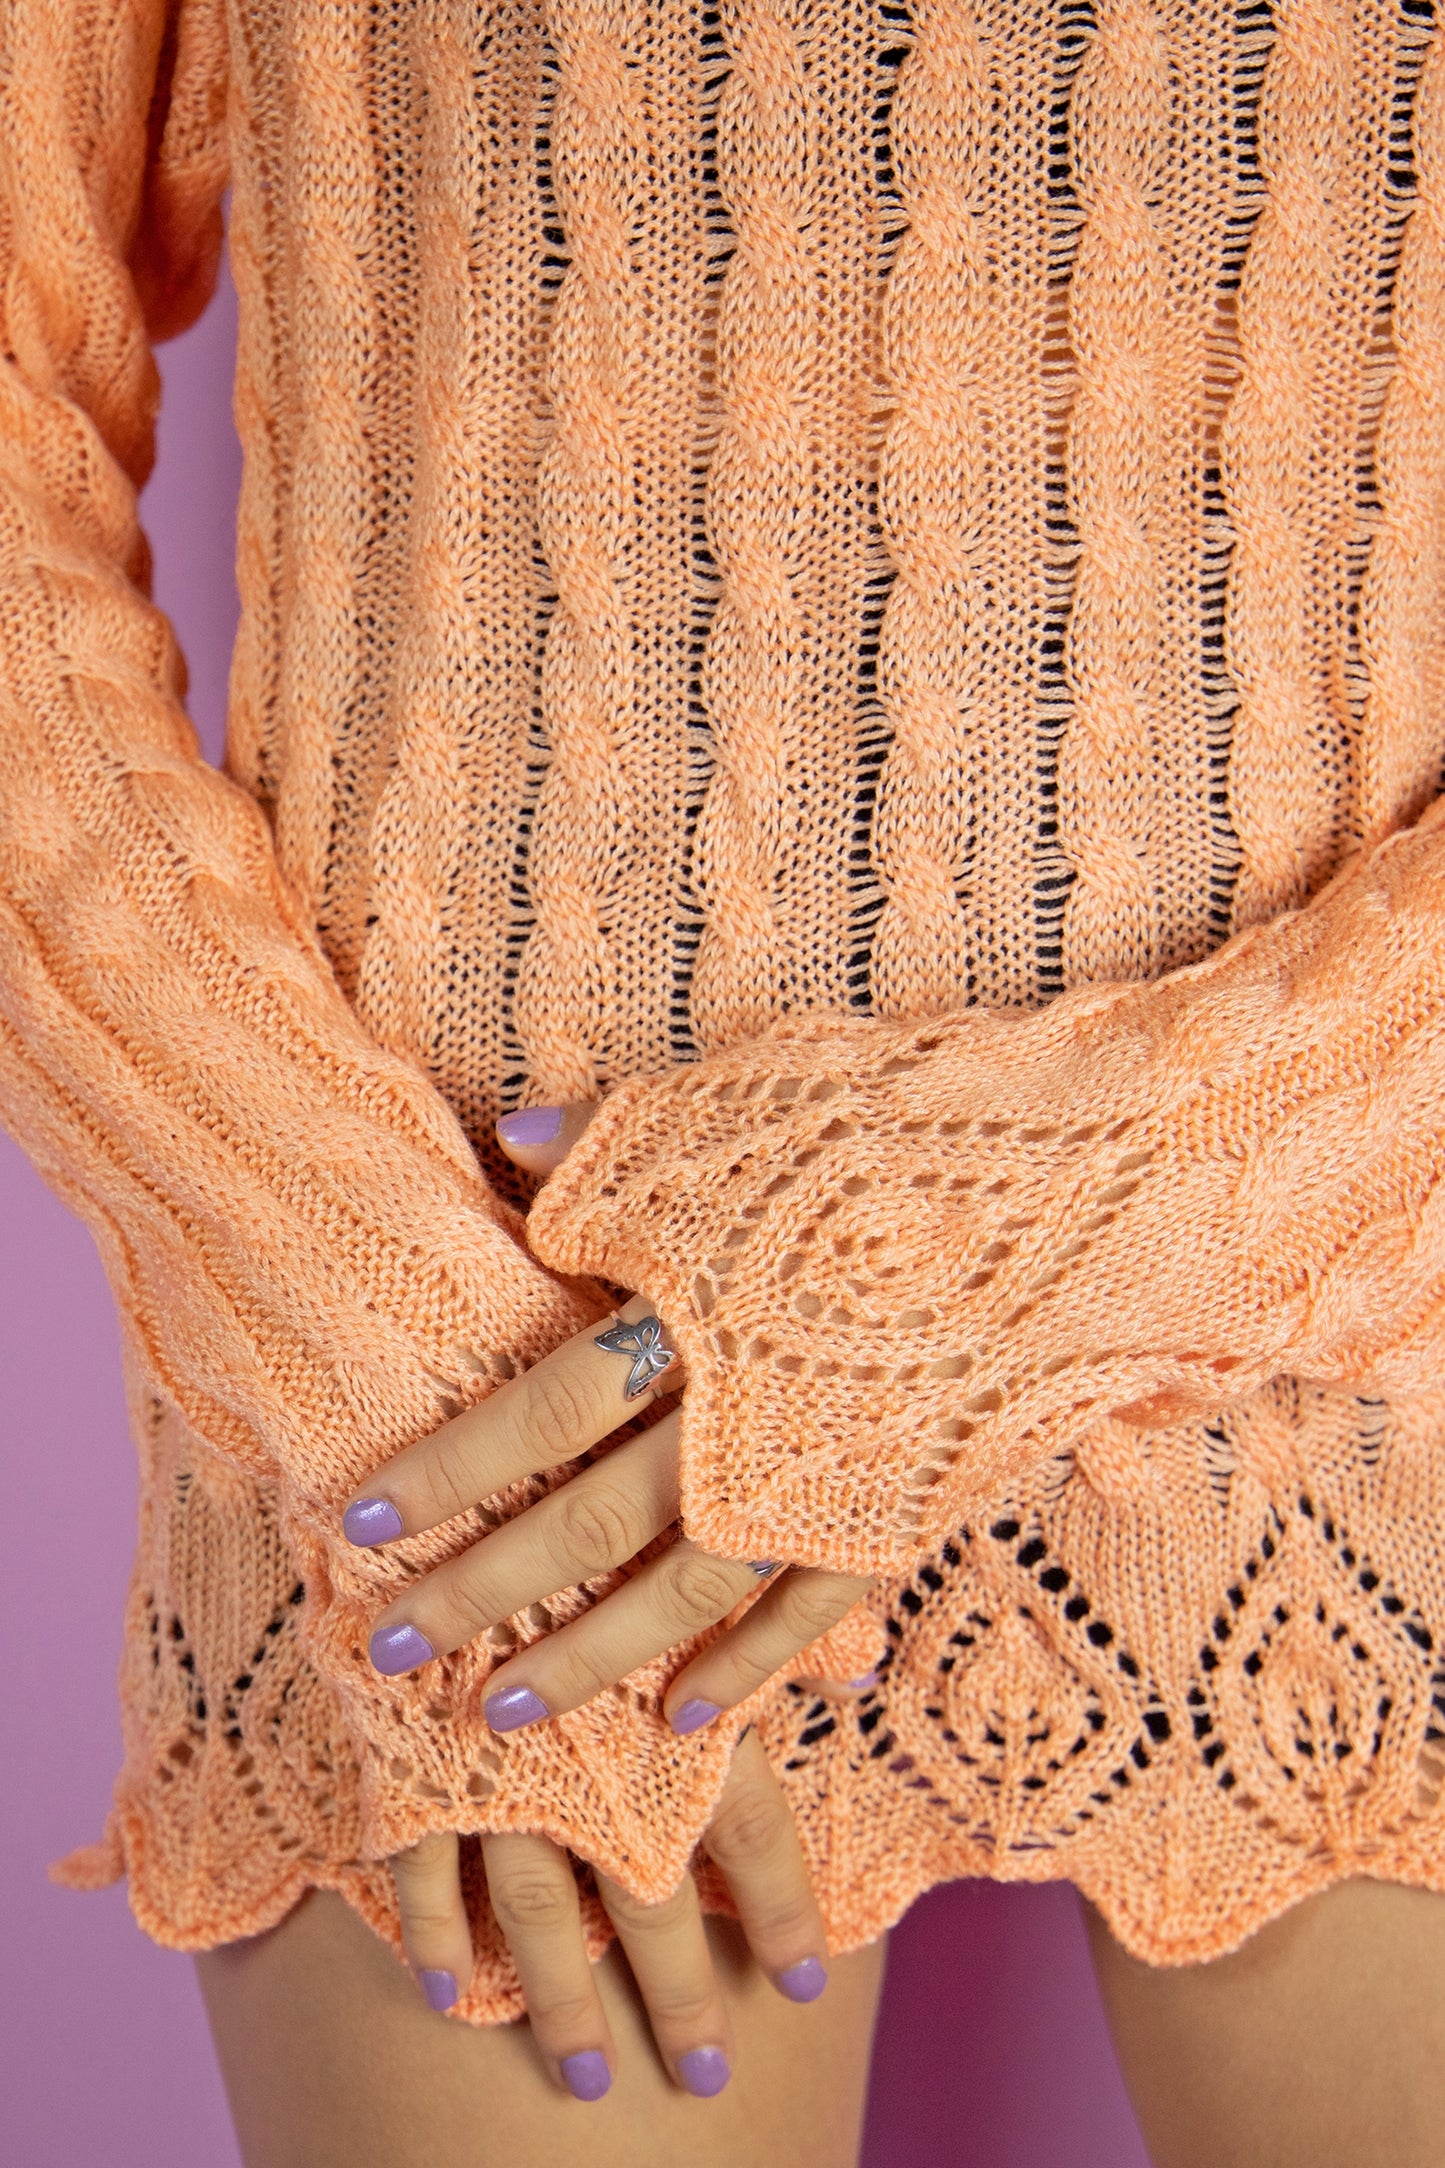 Vintage 80s Orange Cable Knit Sweater - M/L